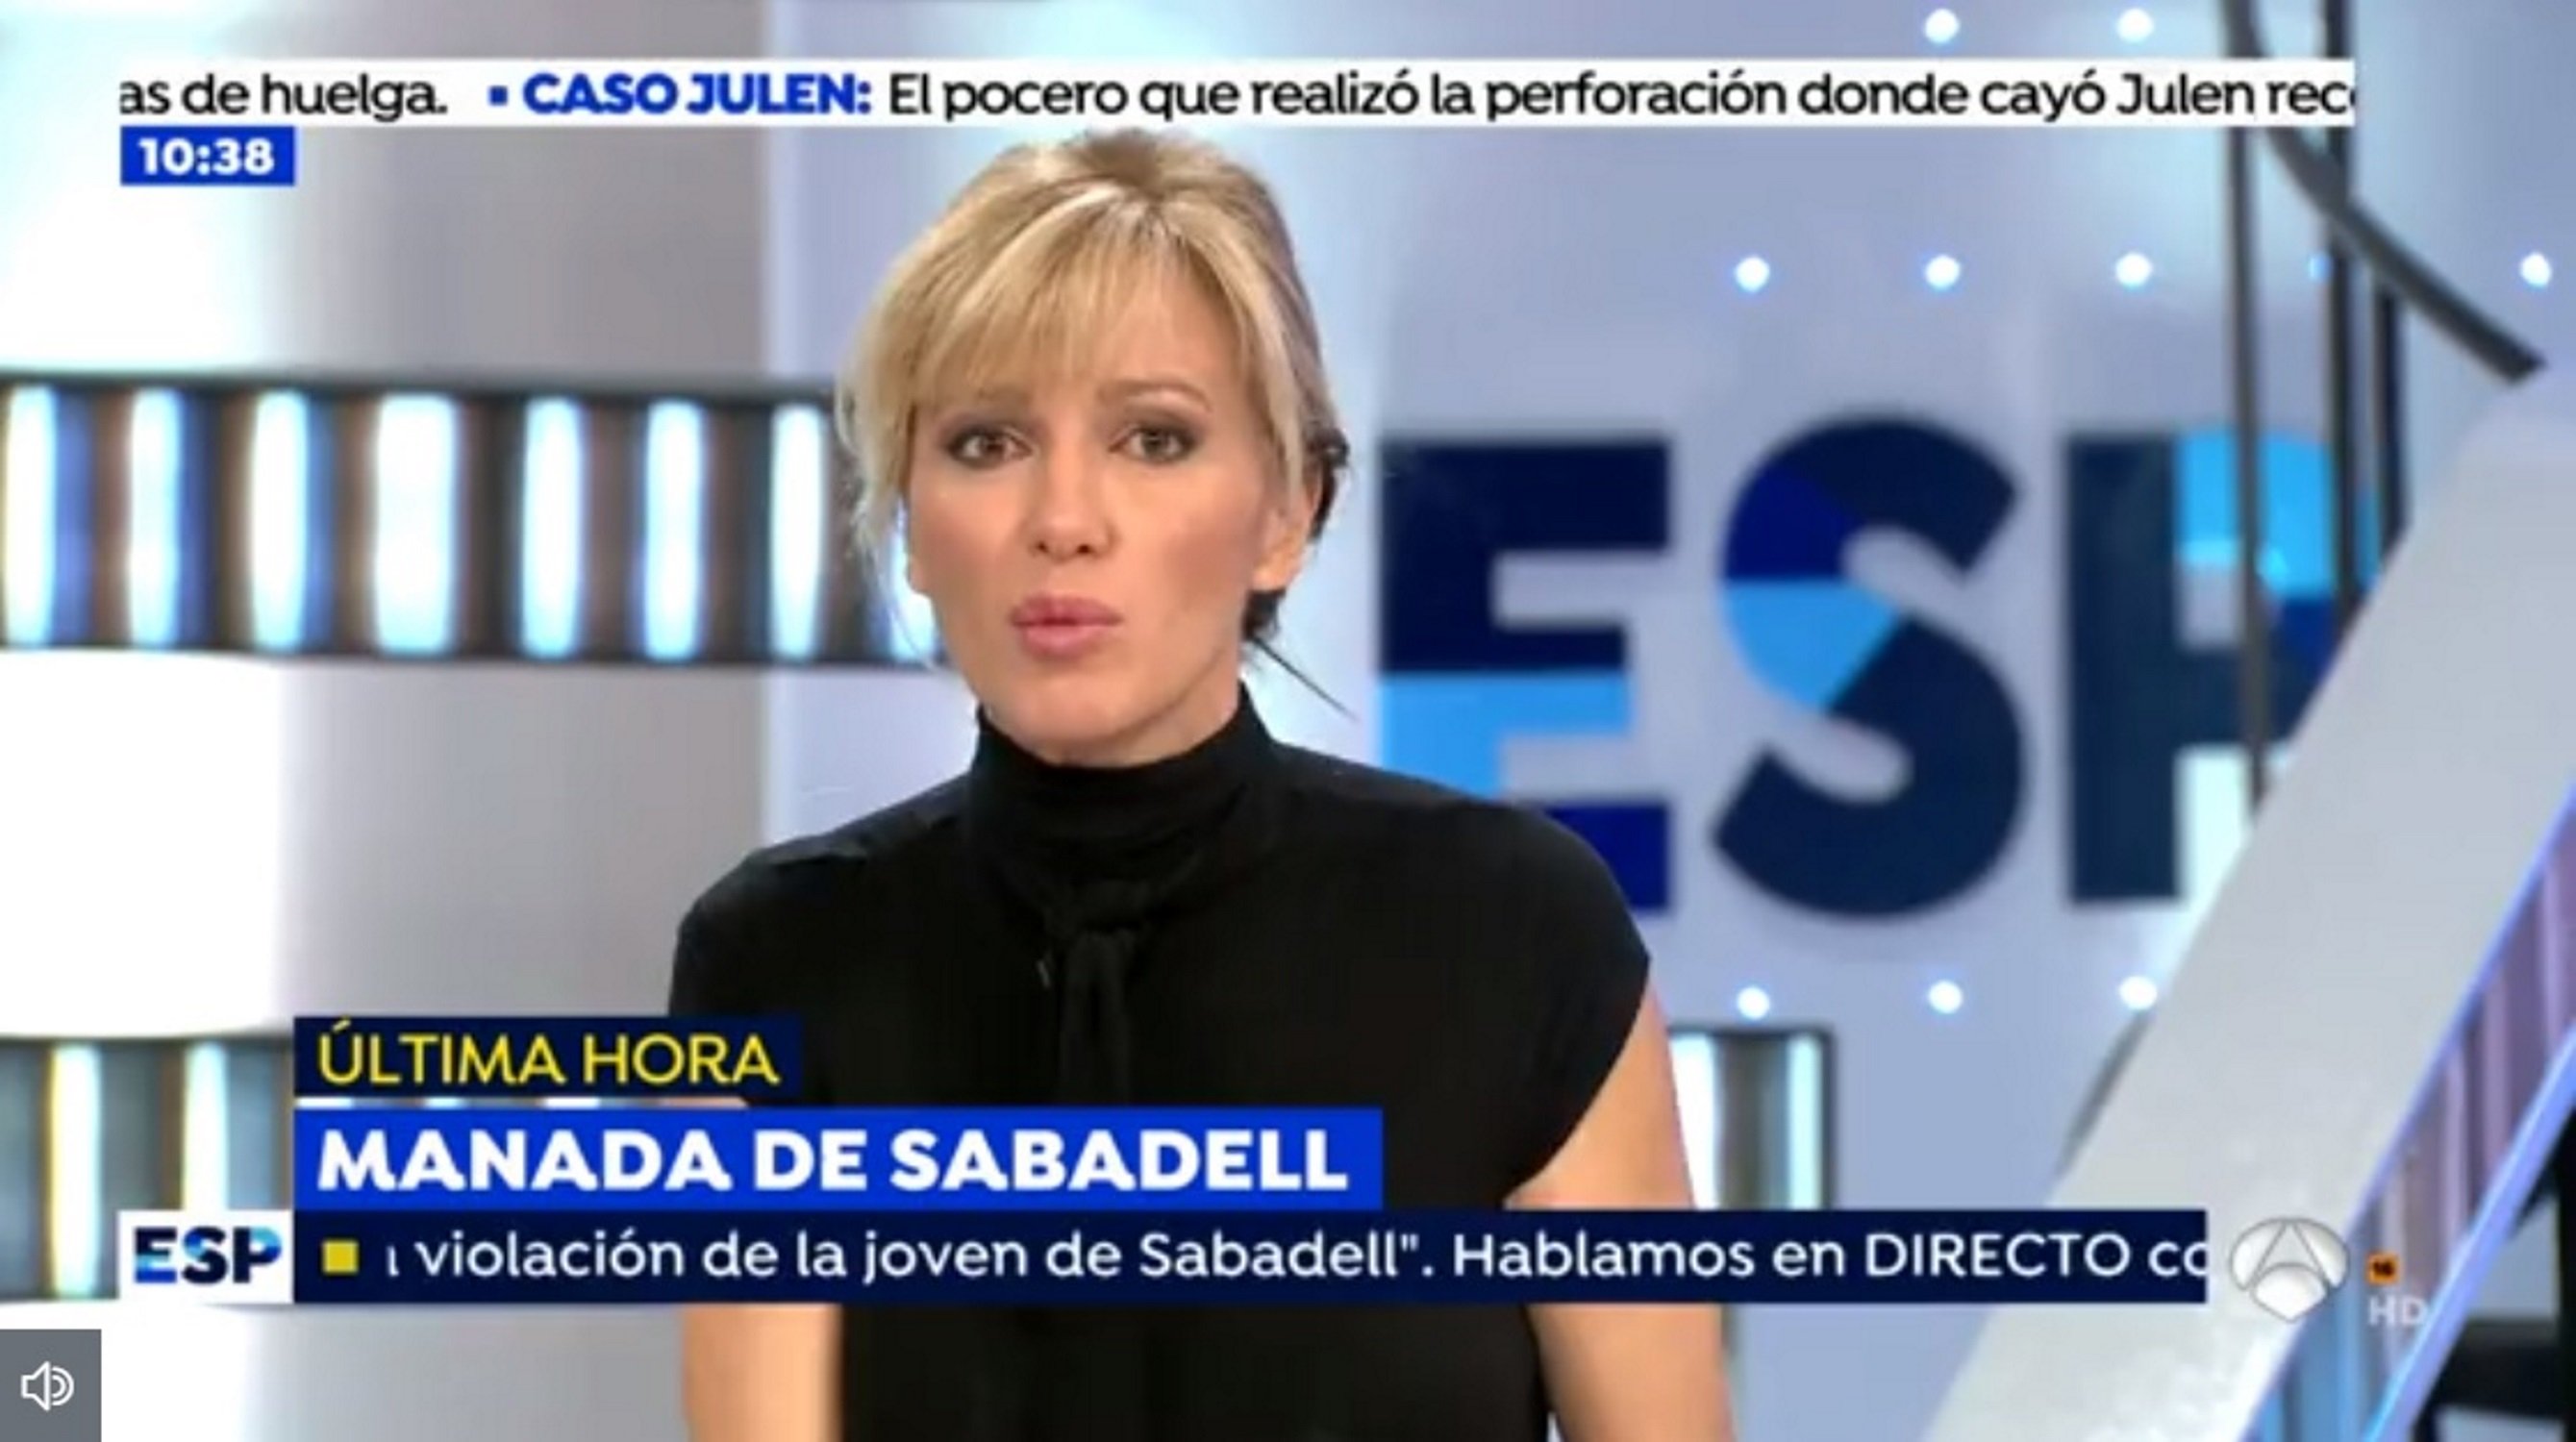 Griso emite imágenes de esteladas para hablar de la violación de Sabadell